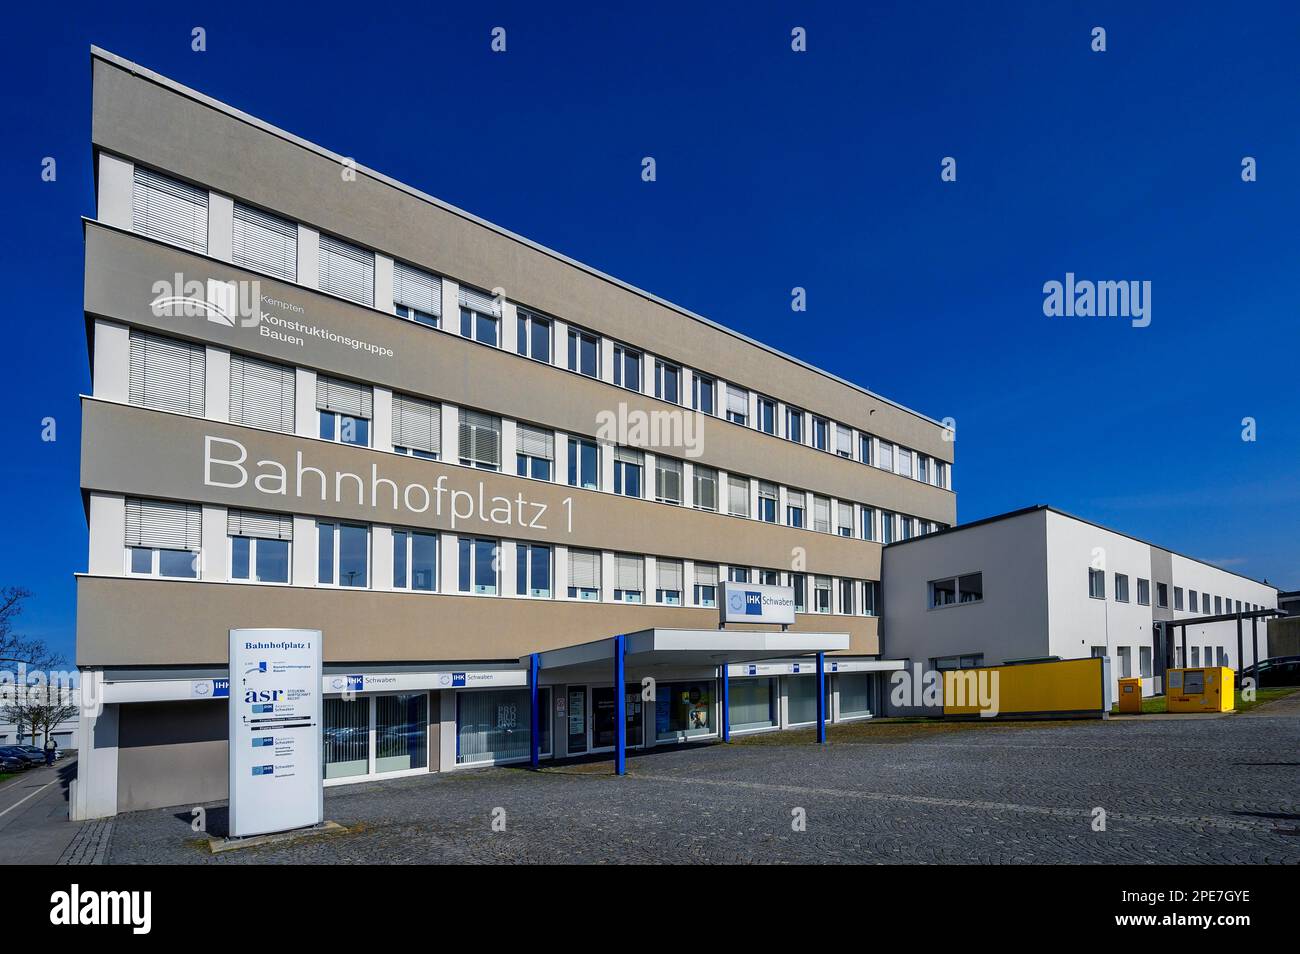 Architettura, sede del Construction Group Building e della IHK-Swabia, Kempten, Allgaeu, Baviera, Germania Foto Stock